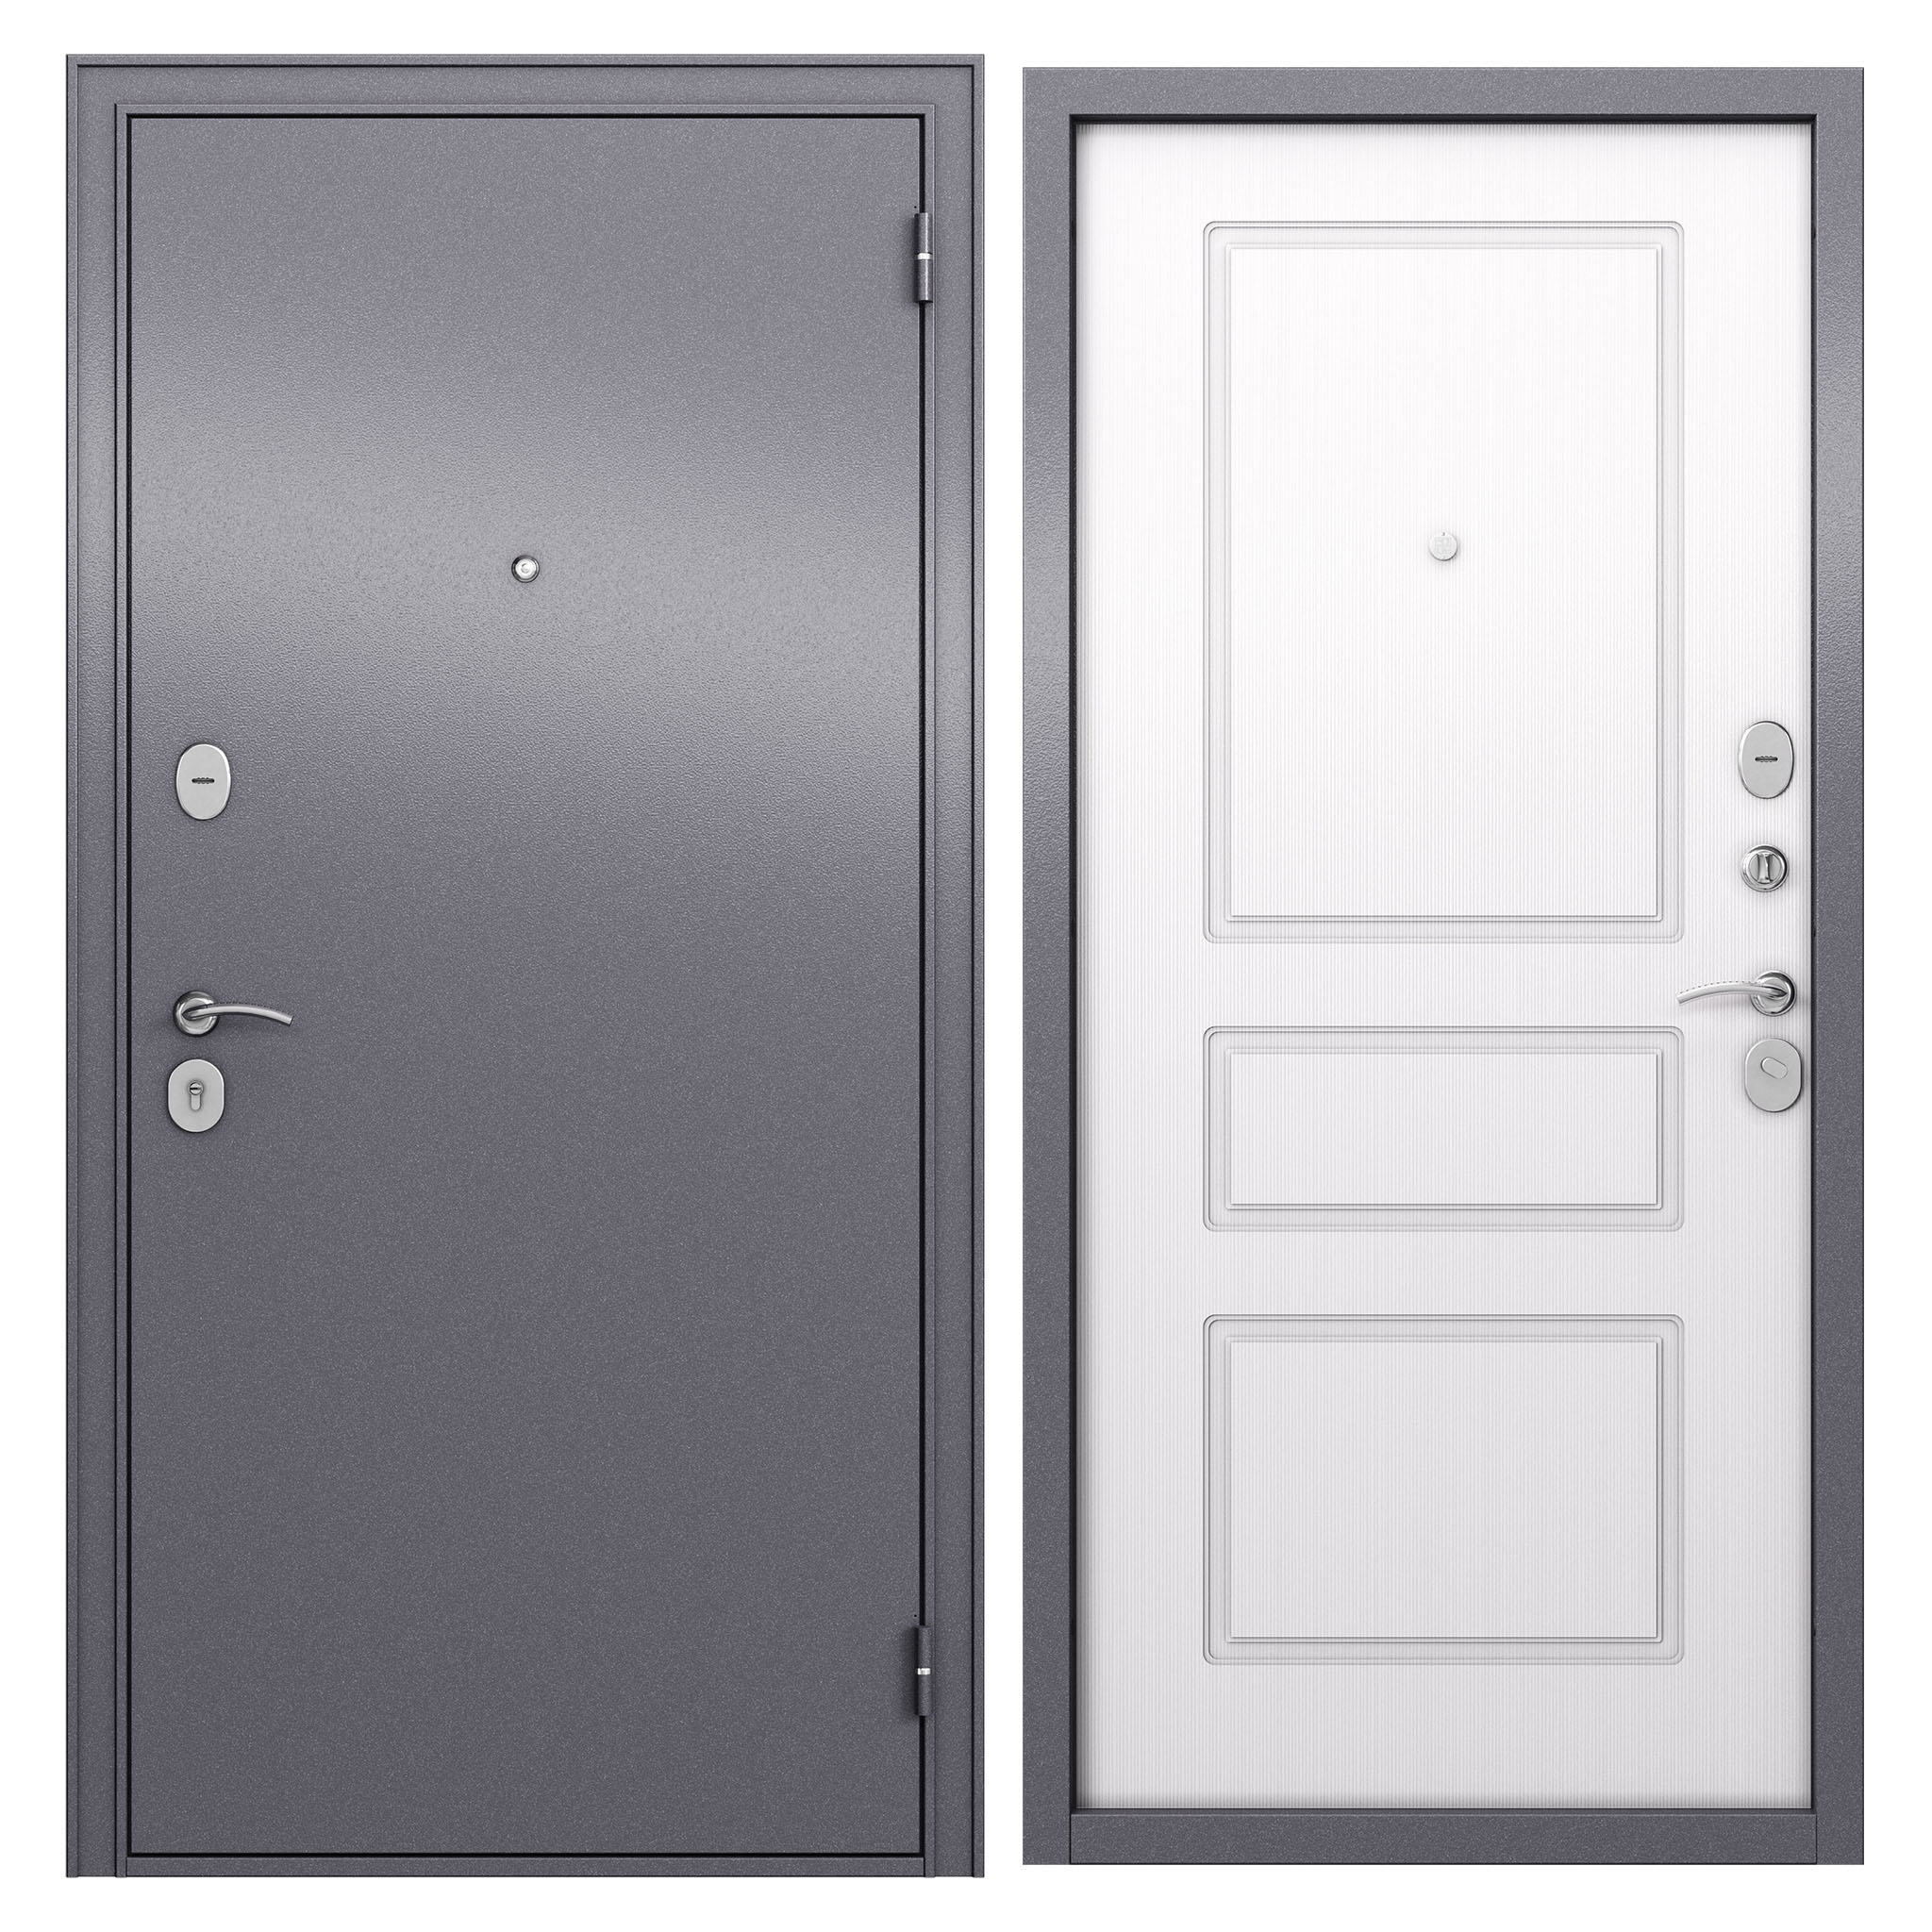 Трио двери. Дверь Гарда 8 мм белый ясень. Тайгер дверь входная антик серебро. Дверь мет. 9 См медный антик белый ясень New (860мм) правая. Двери Тайгер трио.